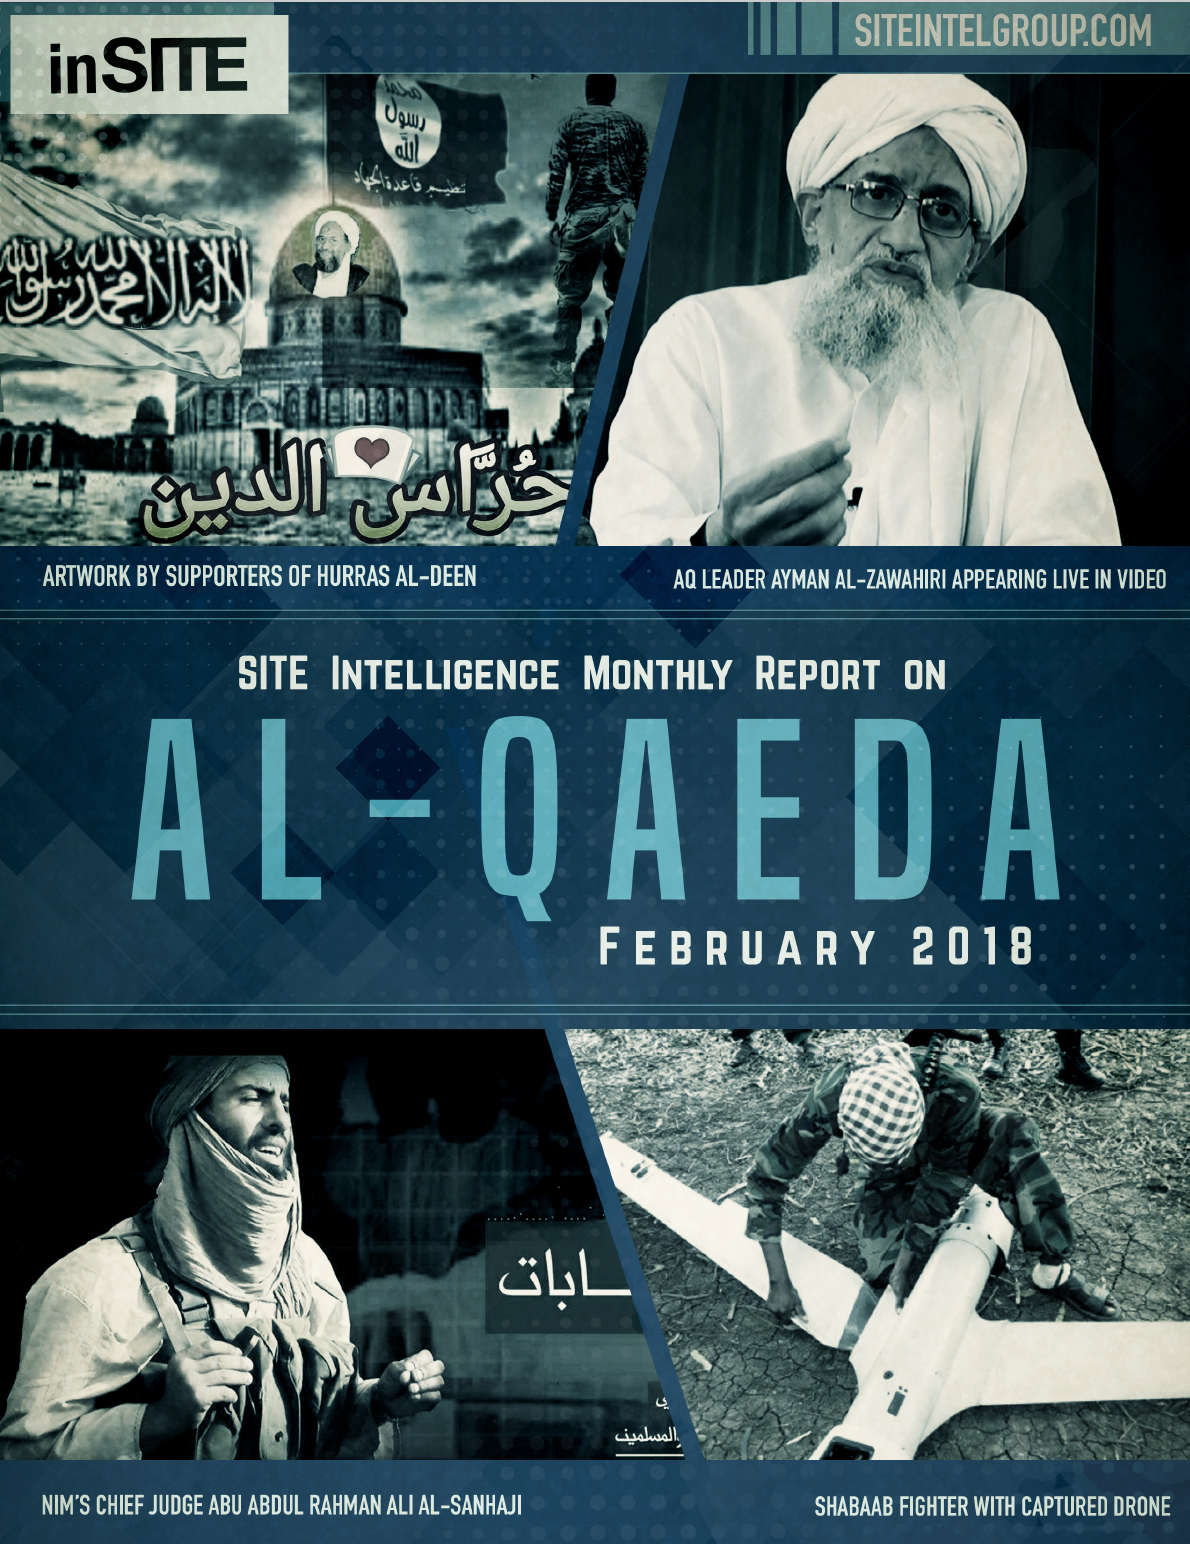 inSITE Report on Al-Qaeda, February 2018